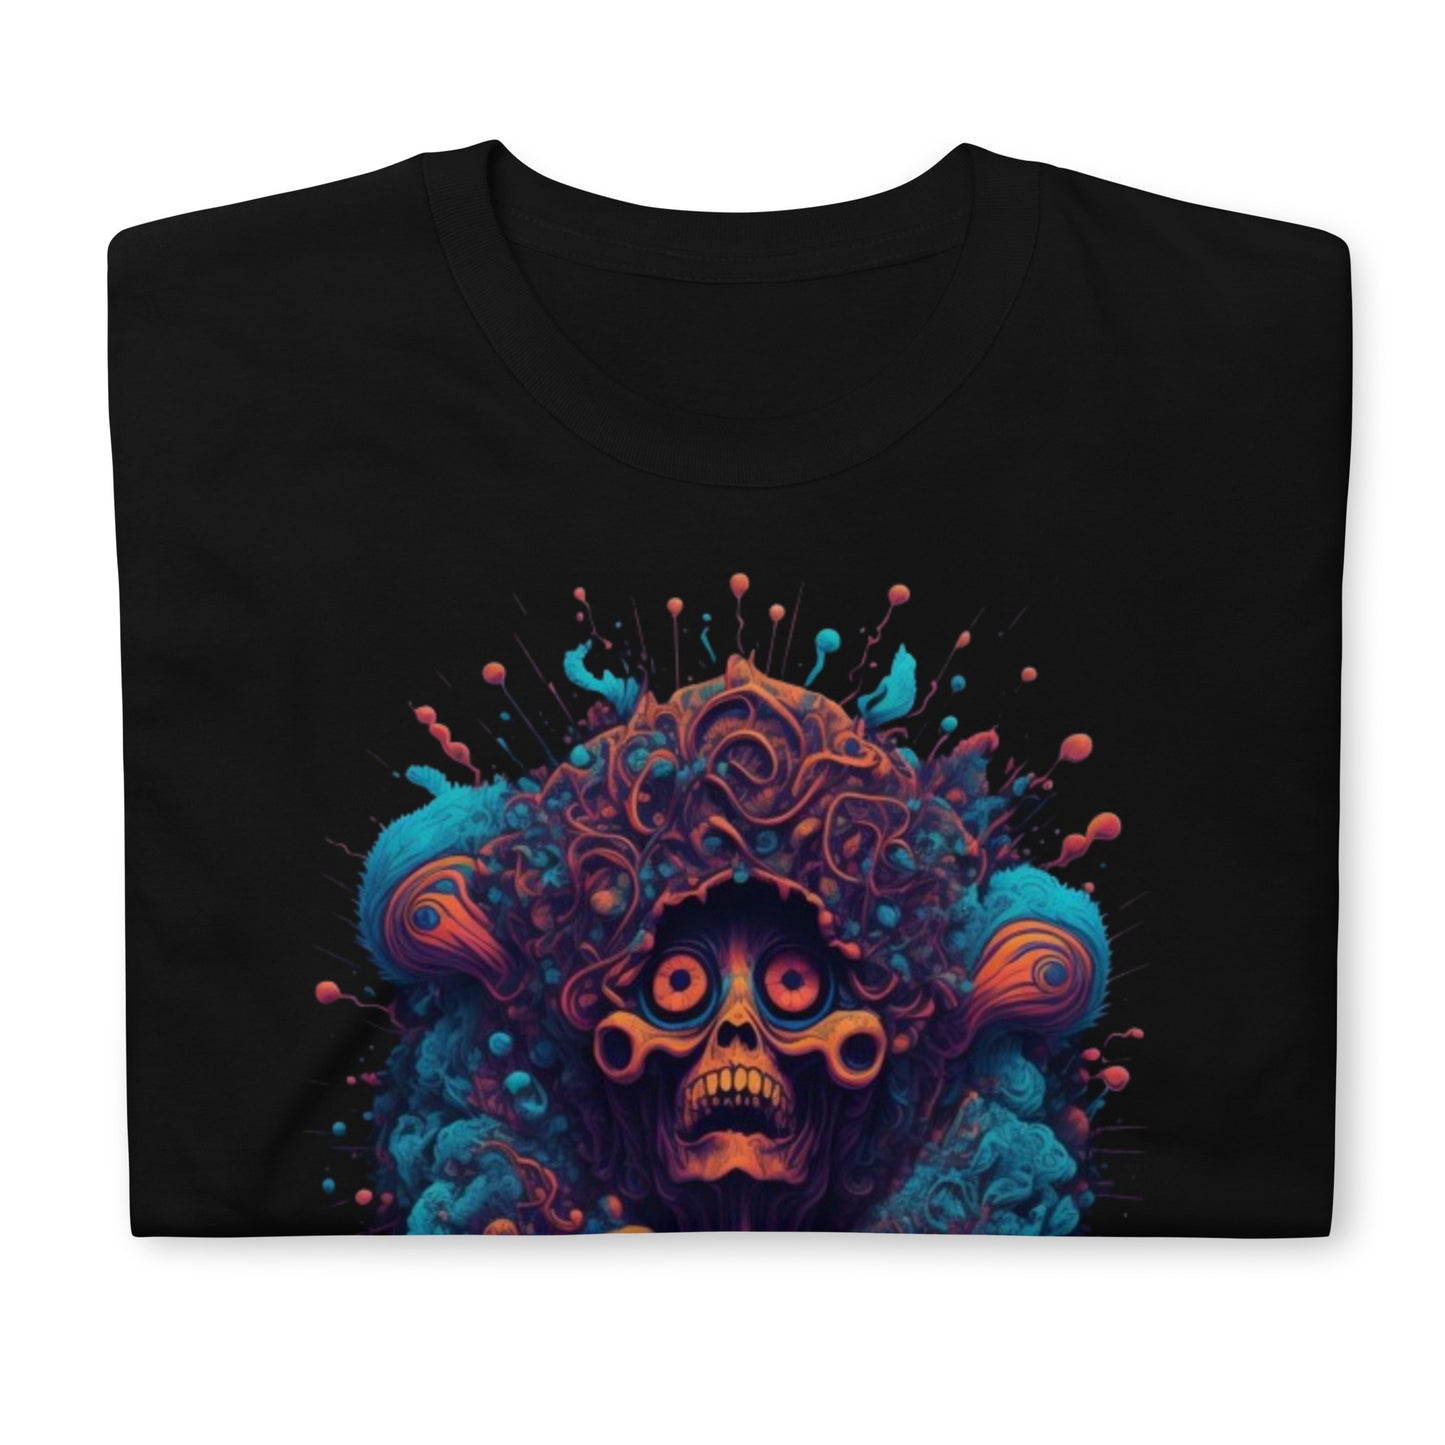 Psychedelischer Geist - Unisex T-Shirt, MDMA Edition